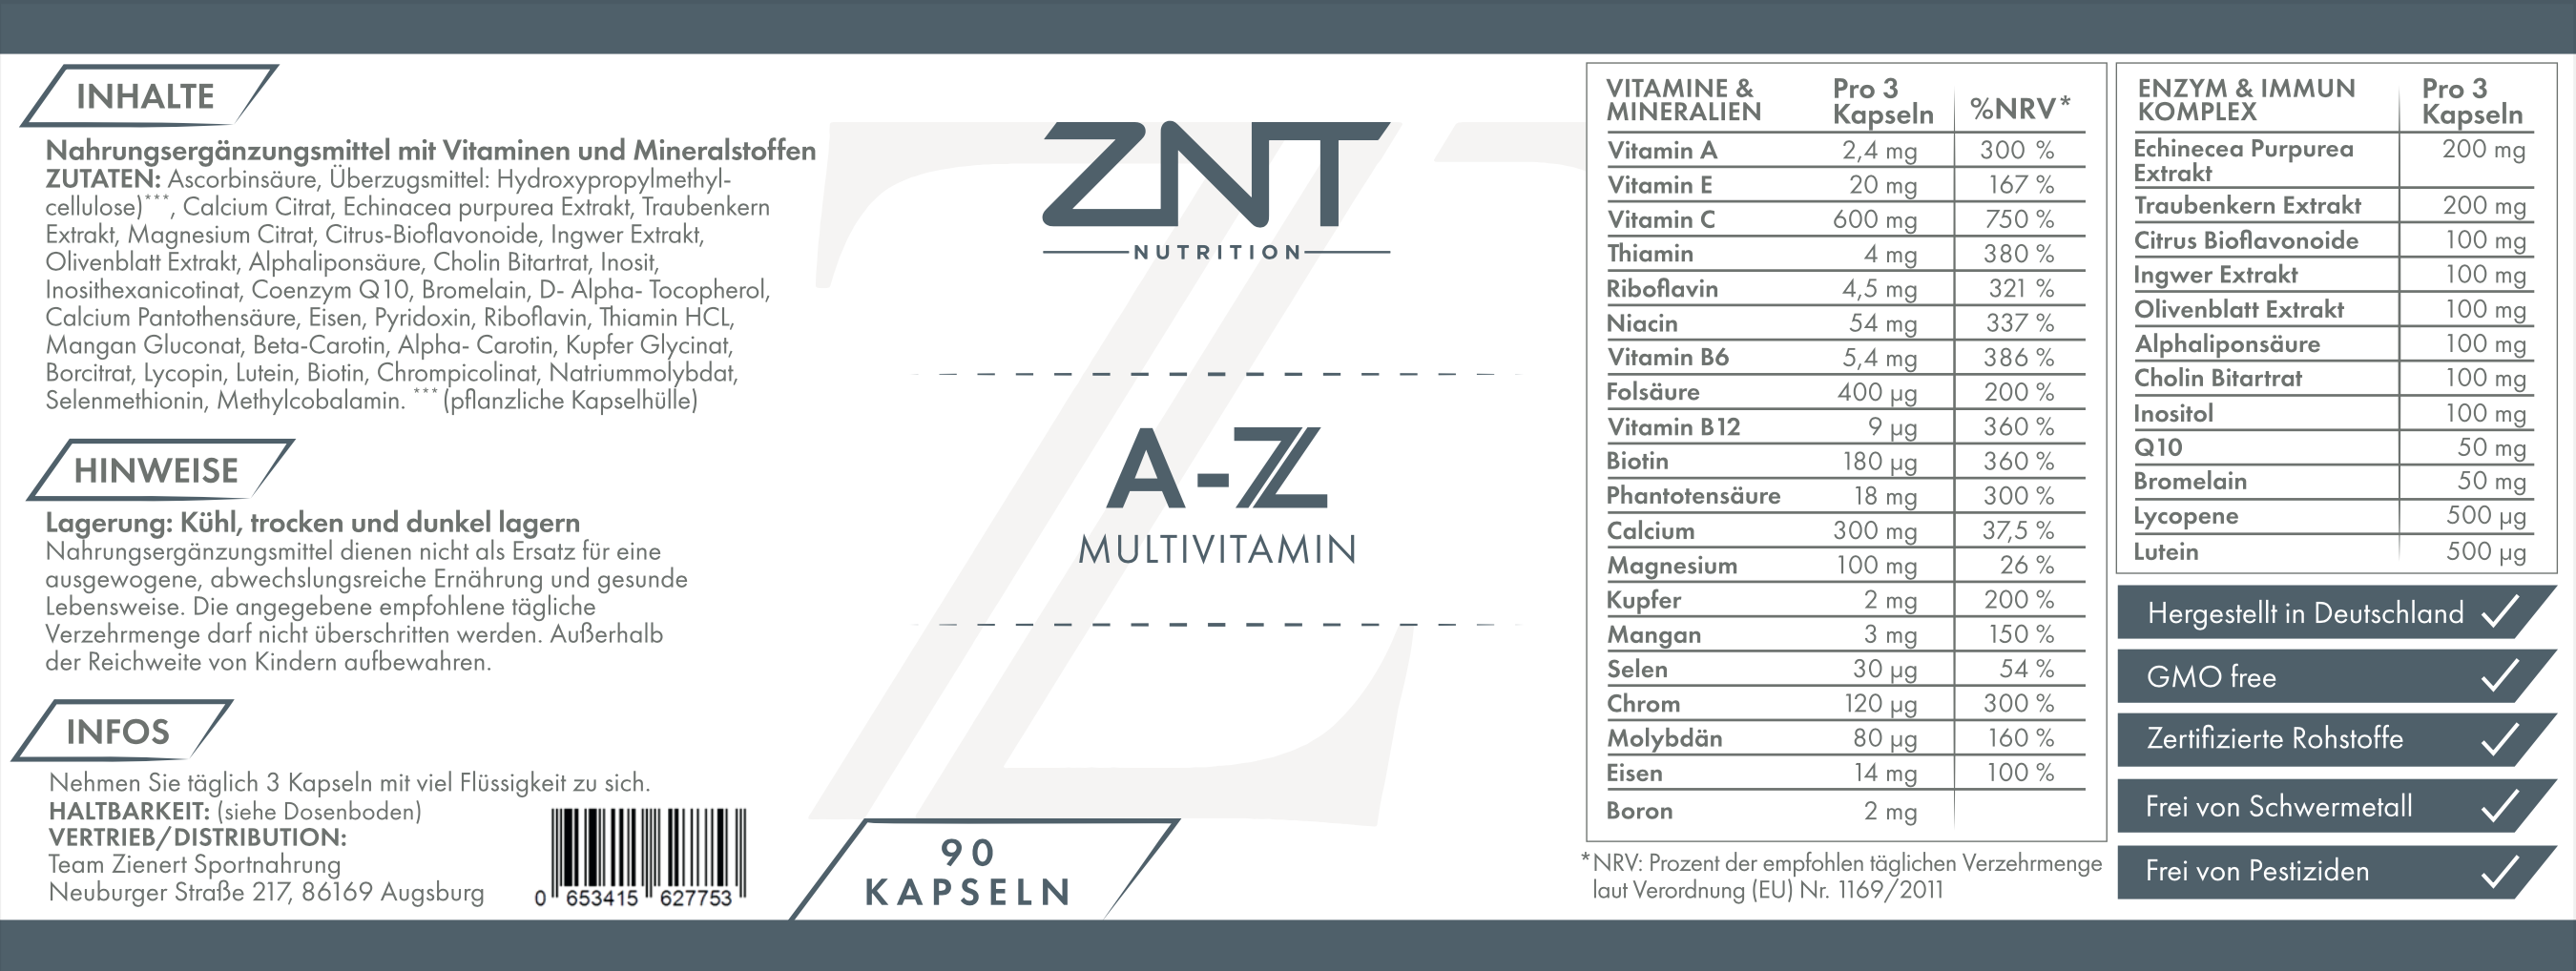 A-Z Multivitamin - ZNT Nutrition